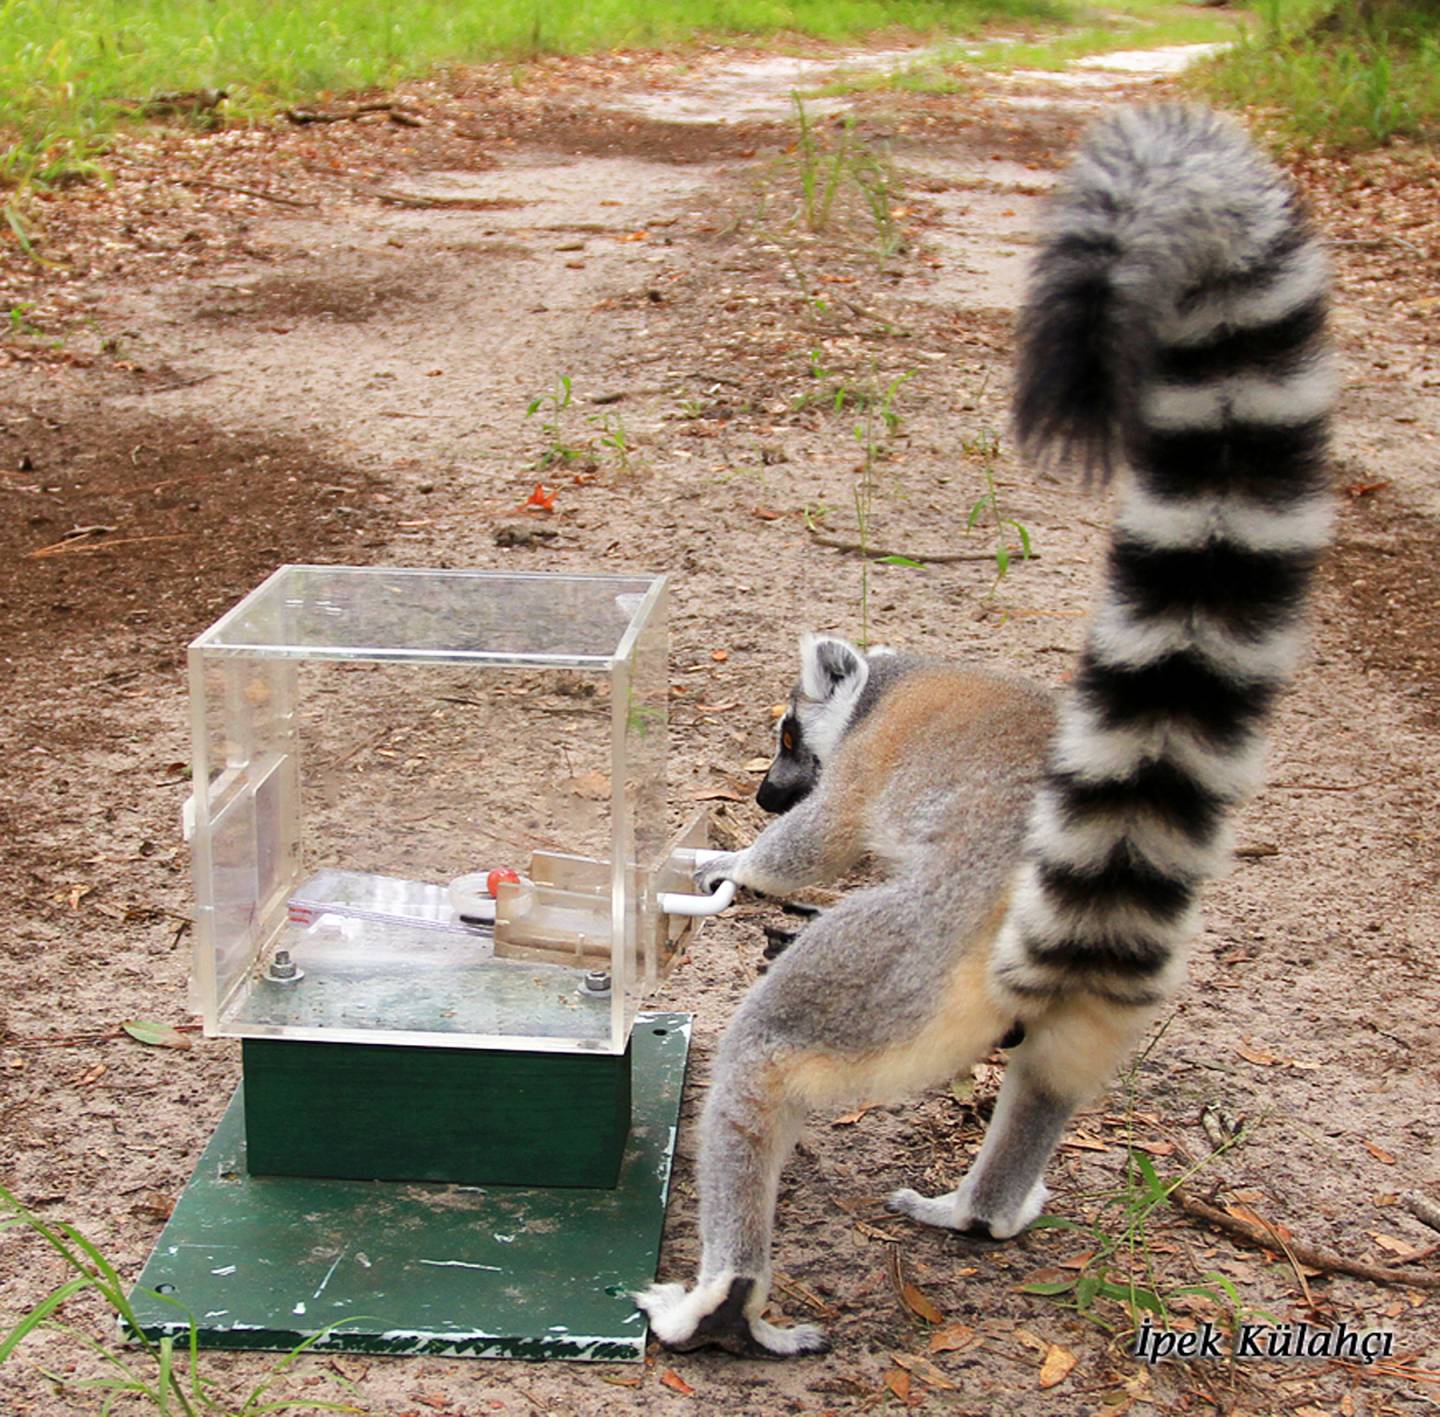 Lemur taking a grape from a box